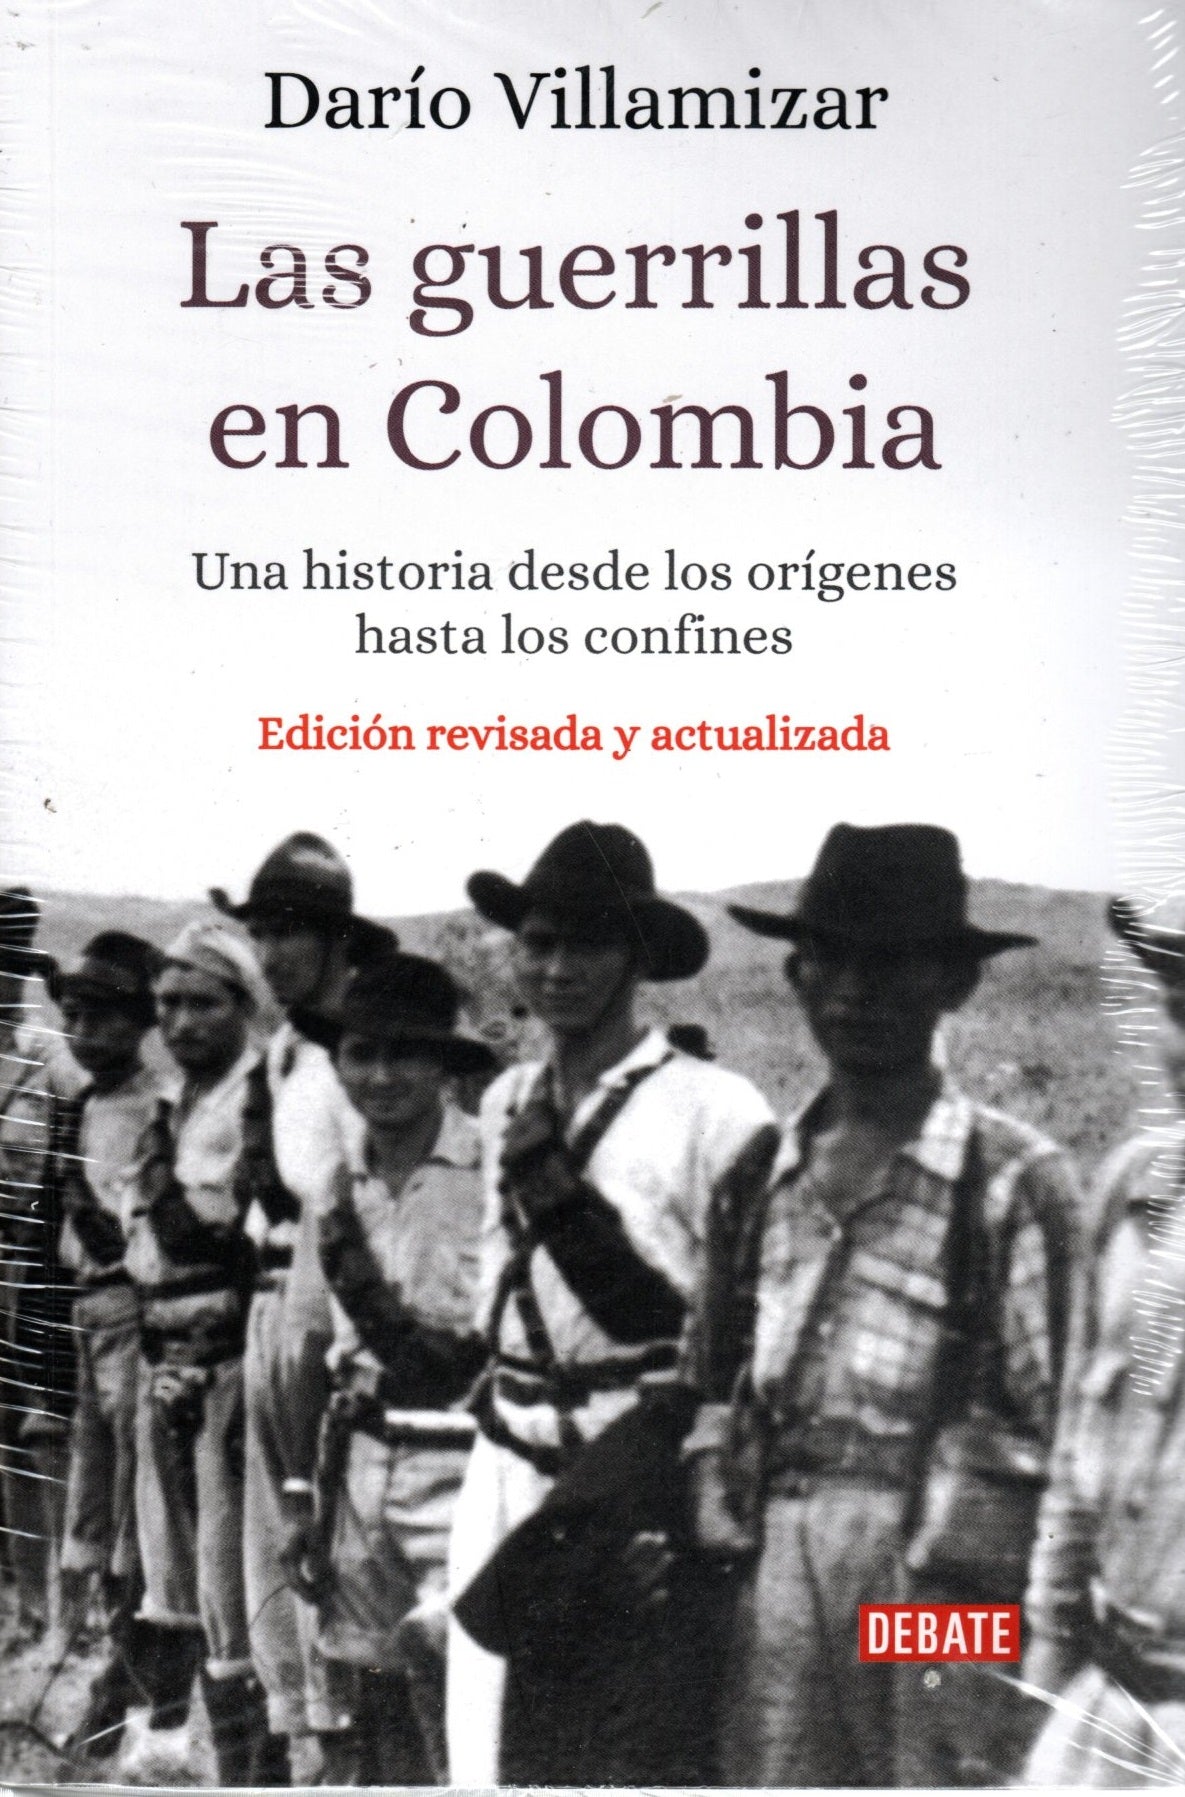 Libro Darío Villamizar Herrera - Las guerrillas en Colombia